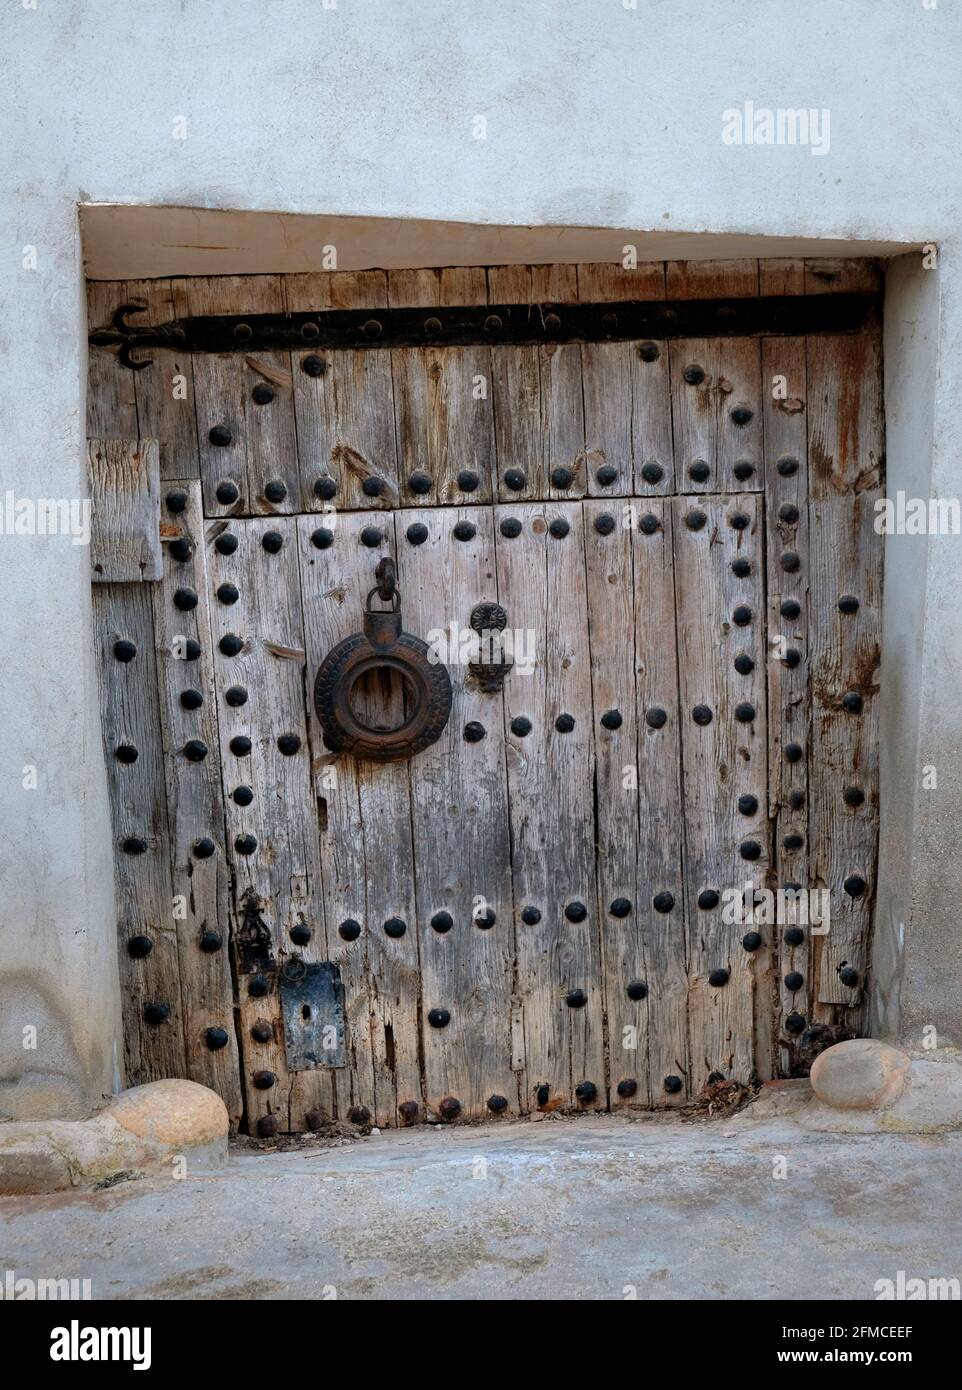 Una vecchia e delapidated chiodo-borchiata porta posteriore nel villaggio di Torrebaja in Valancia, Spagna Foto Stock